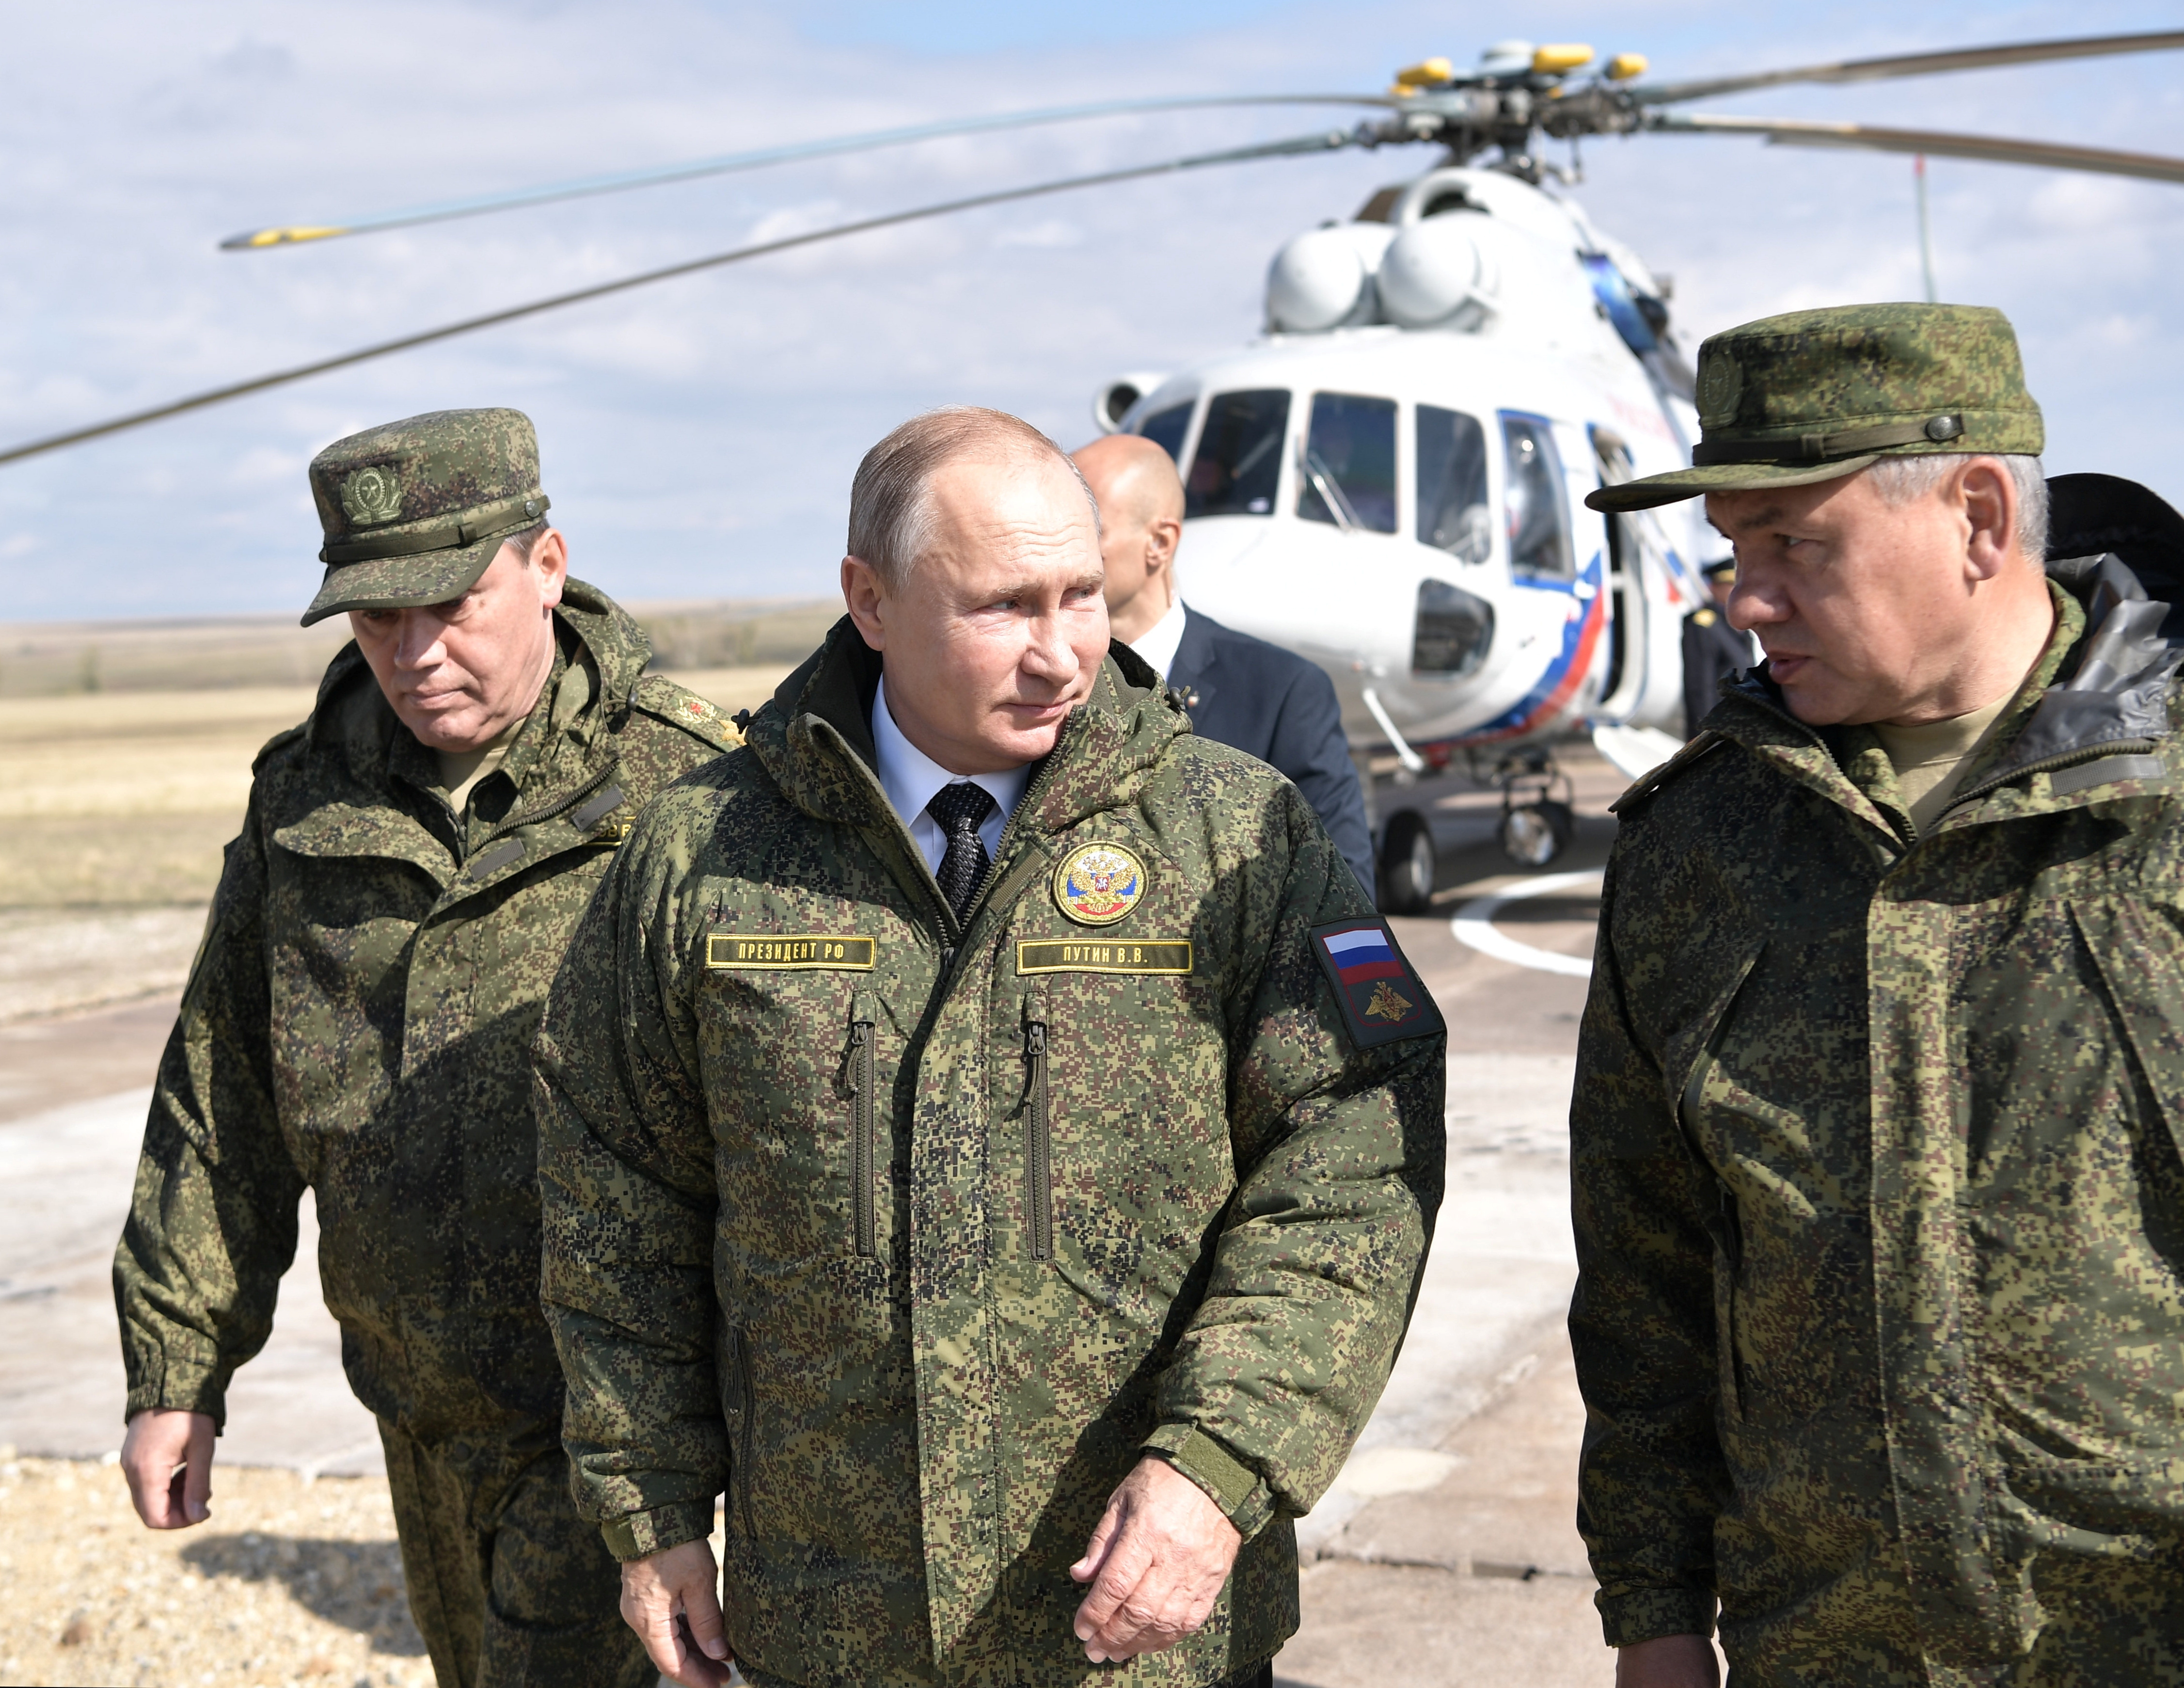 La estrategia que propone el archienemigo de Putin para debilitar su poder en la guerra